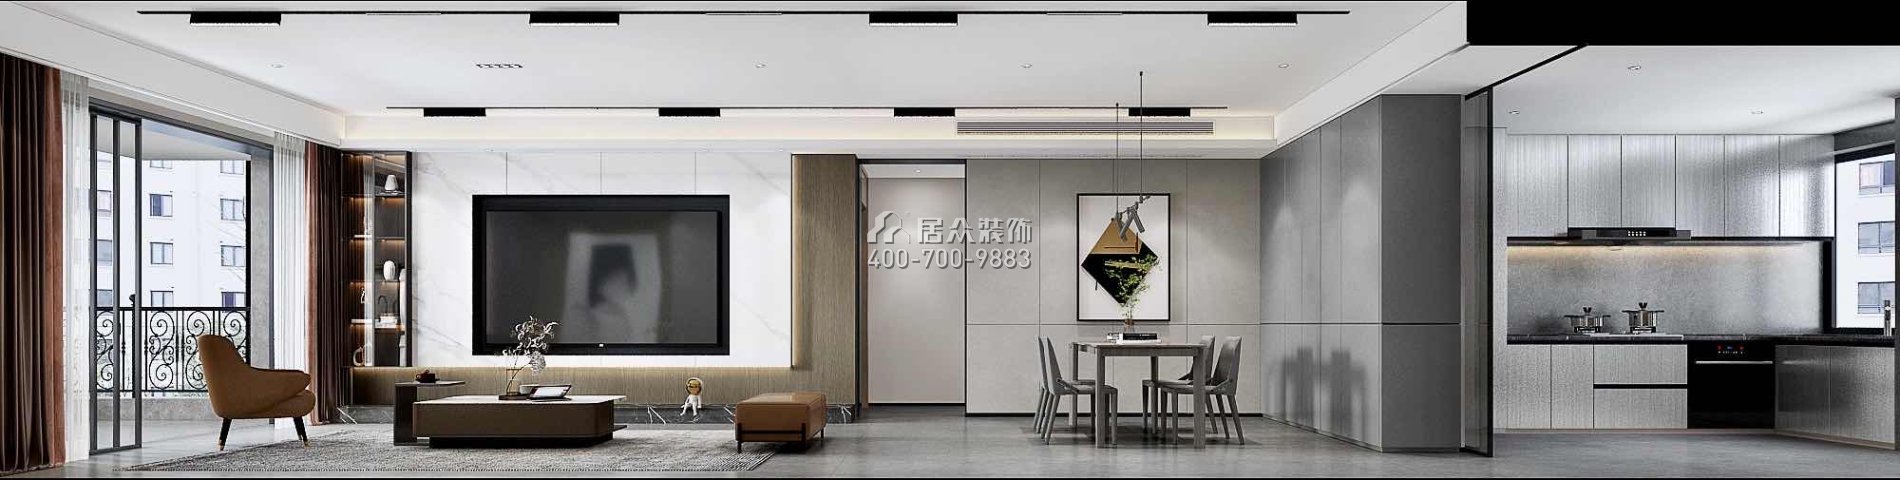 南海玫瑰園三期180平方米現代簡約風格平層戶型客廳裝修效果圖